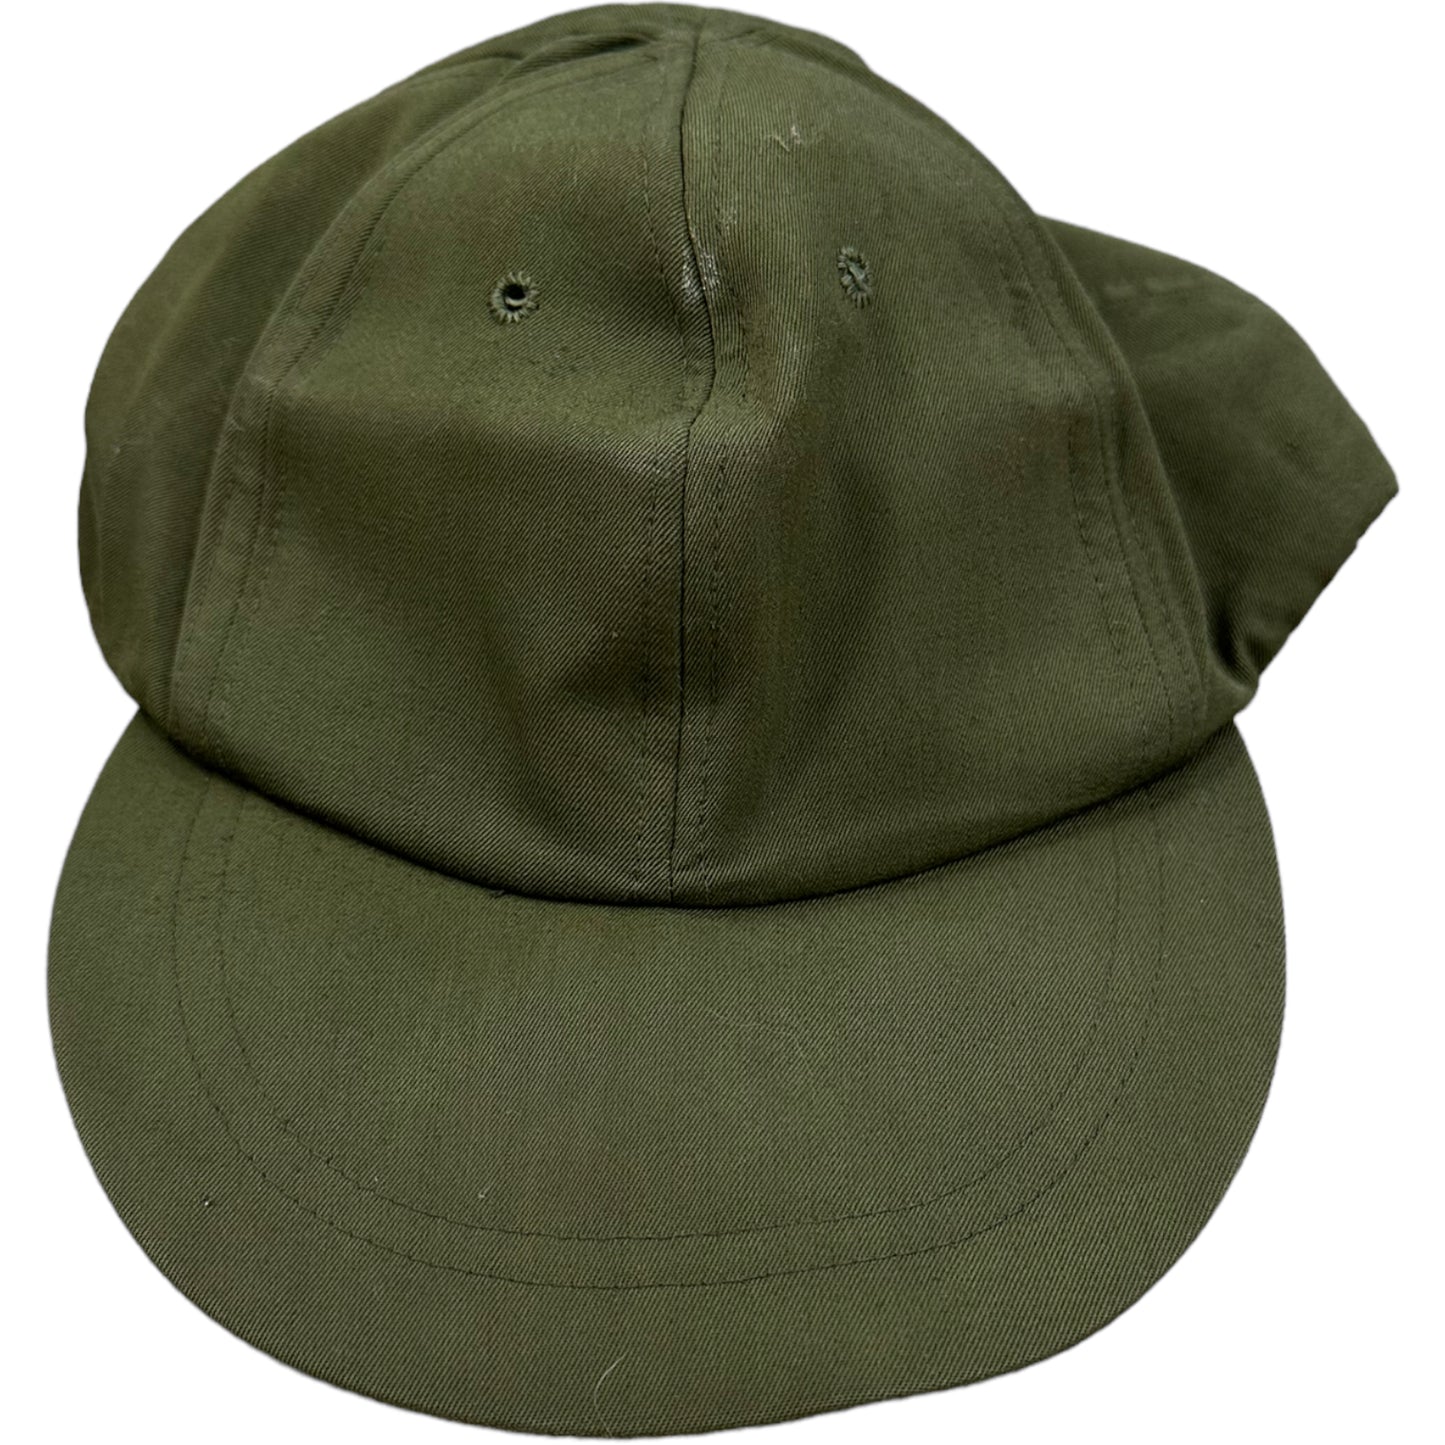 Vietnam Era OG-106 Fitted Hat- 6 1/8